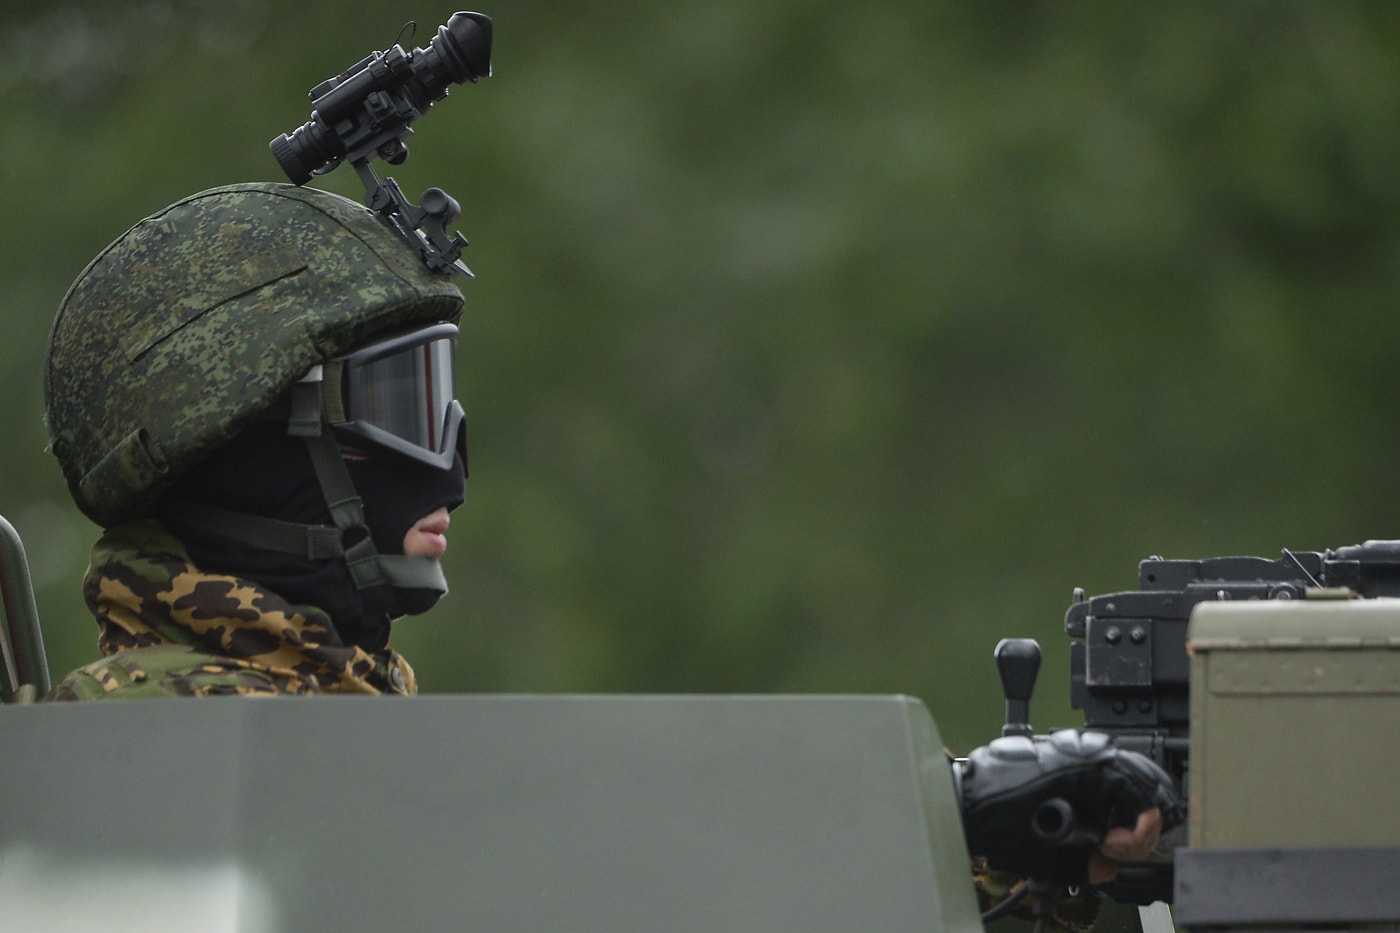 Военный парад в Минске 3 июля 2018 года 